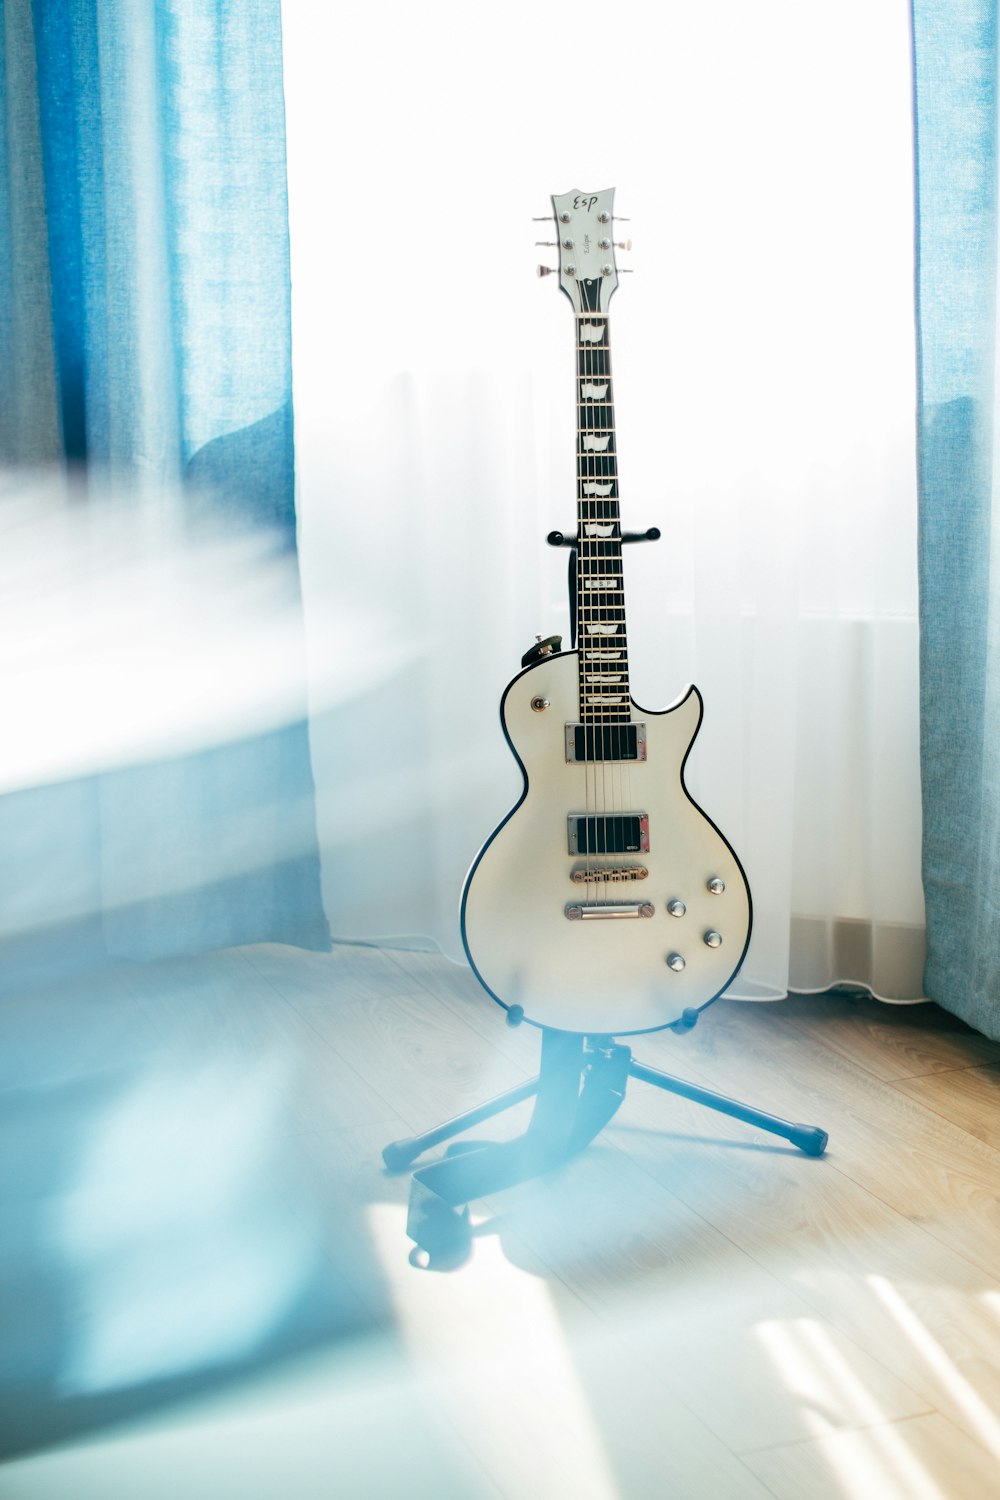 chitarra Les Paul bianca con supporto